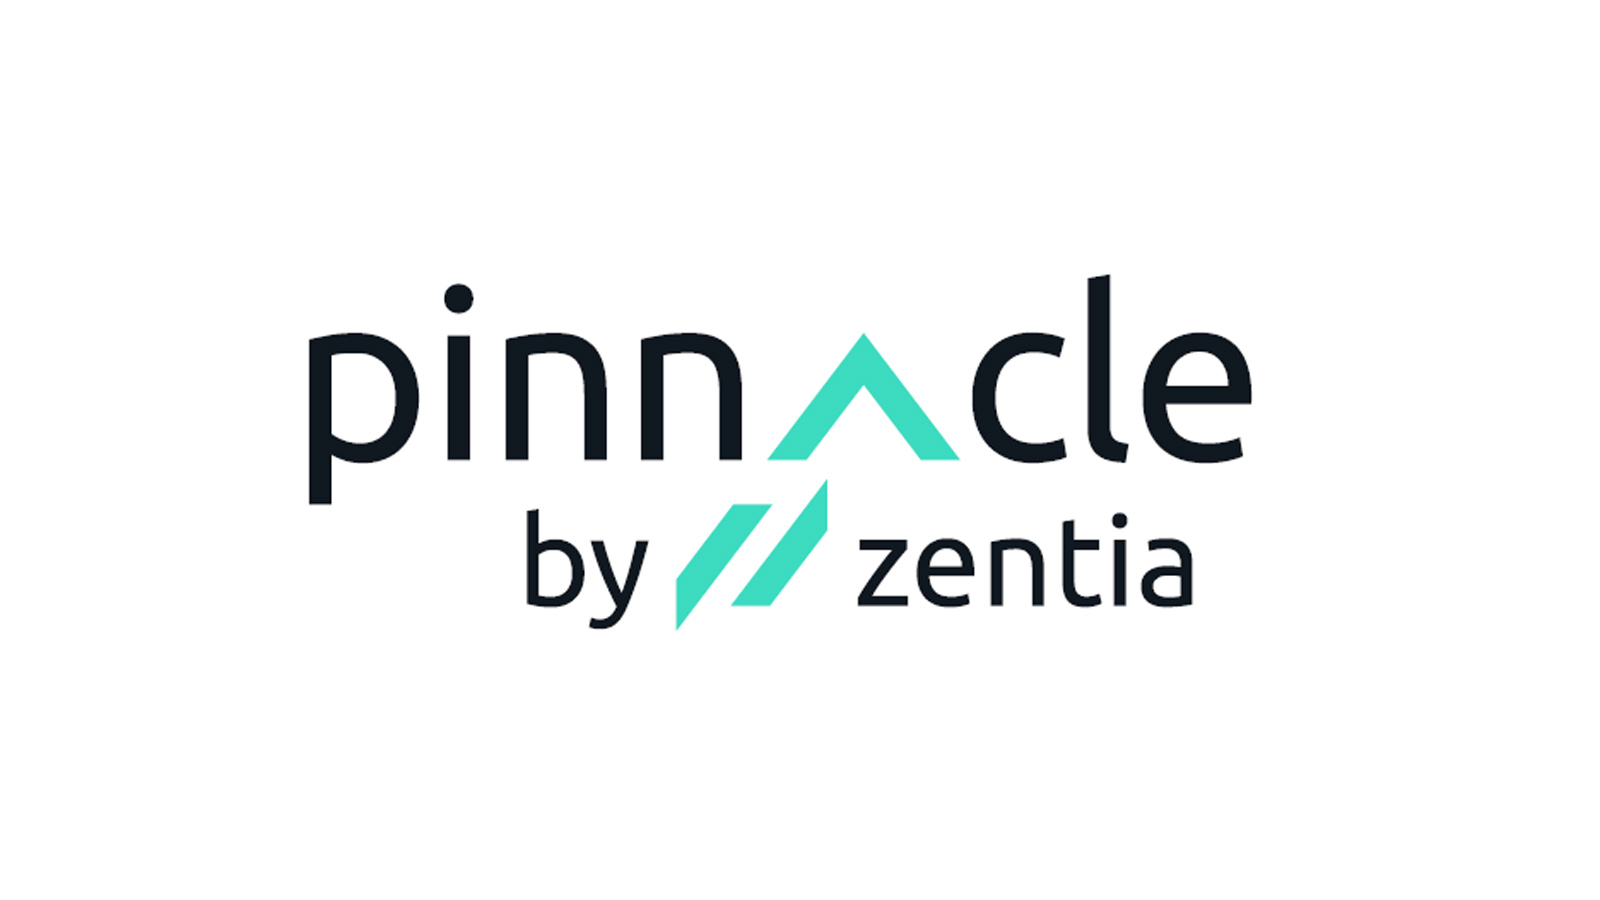 Zentia Launches its Specialist Contractor Partner Scheme – Pinnacle by Zentia